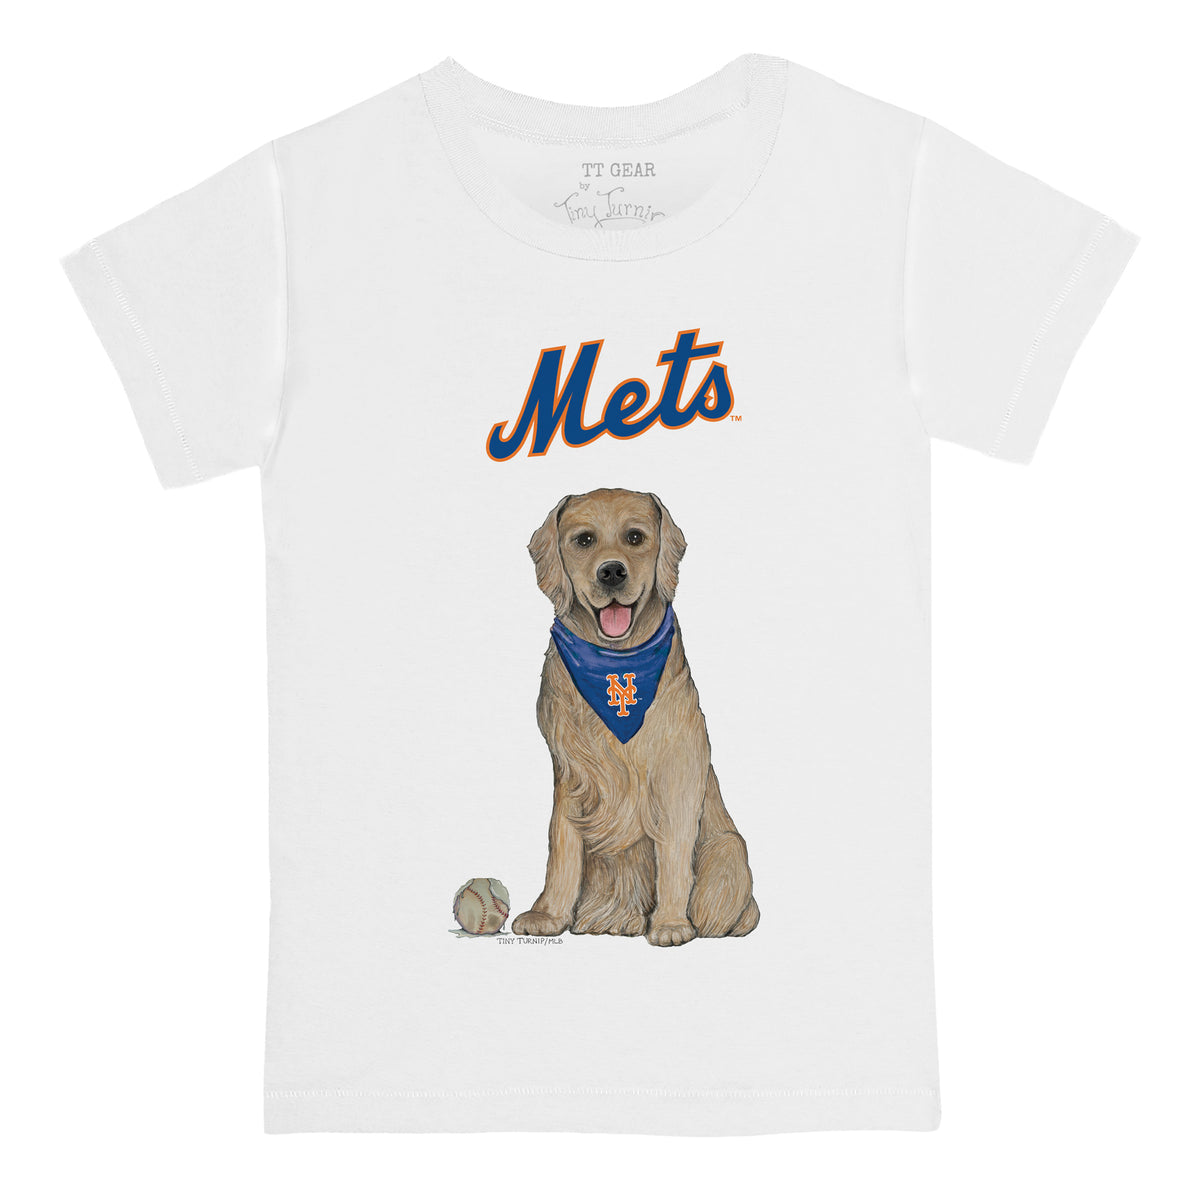 New York Mets Golden Retriever Tee Shirt